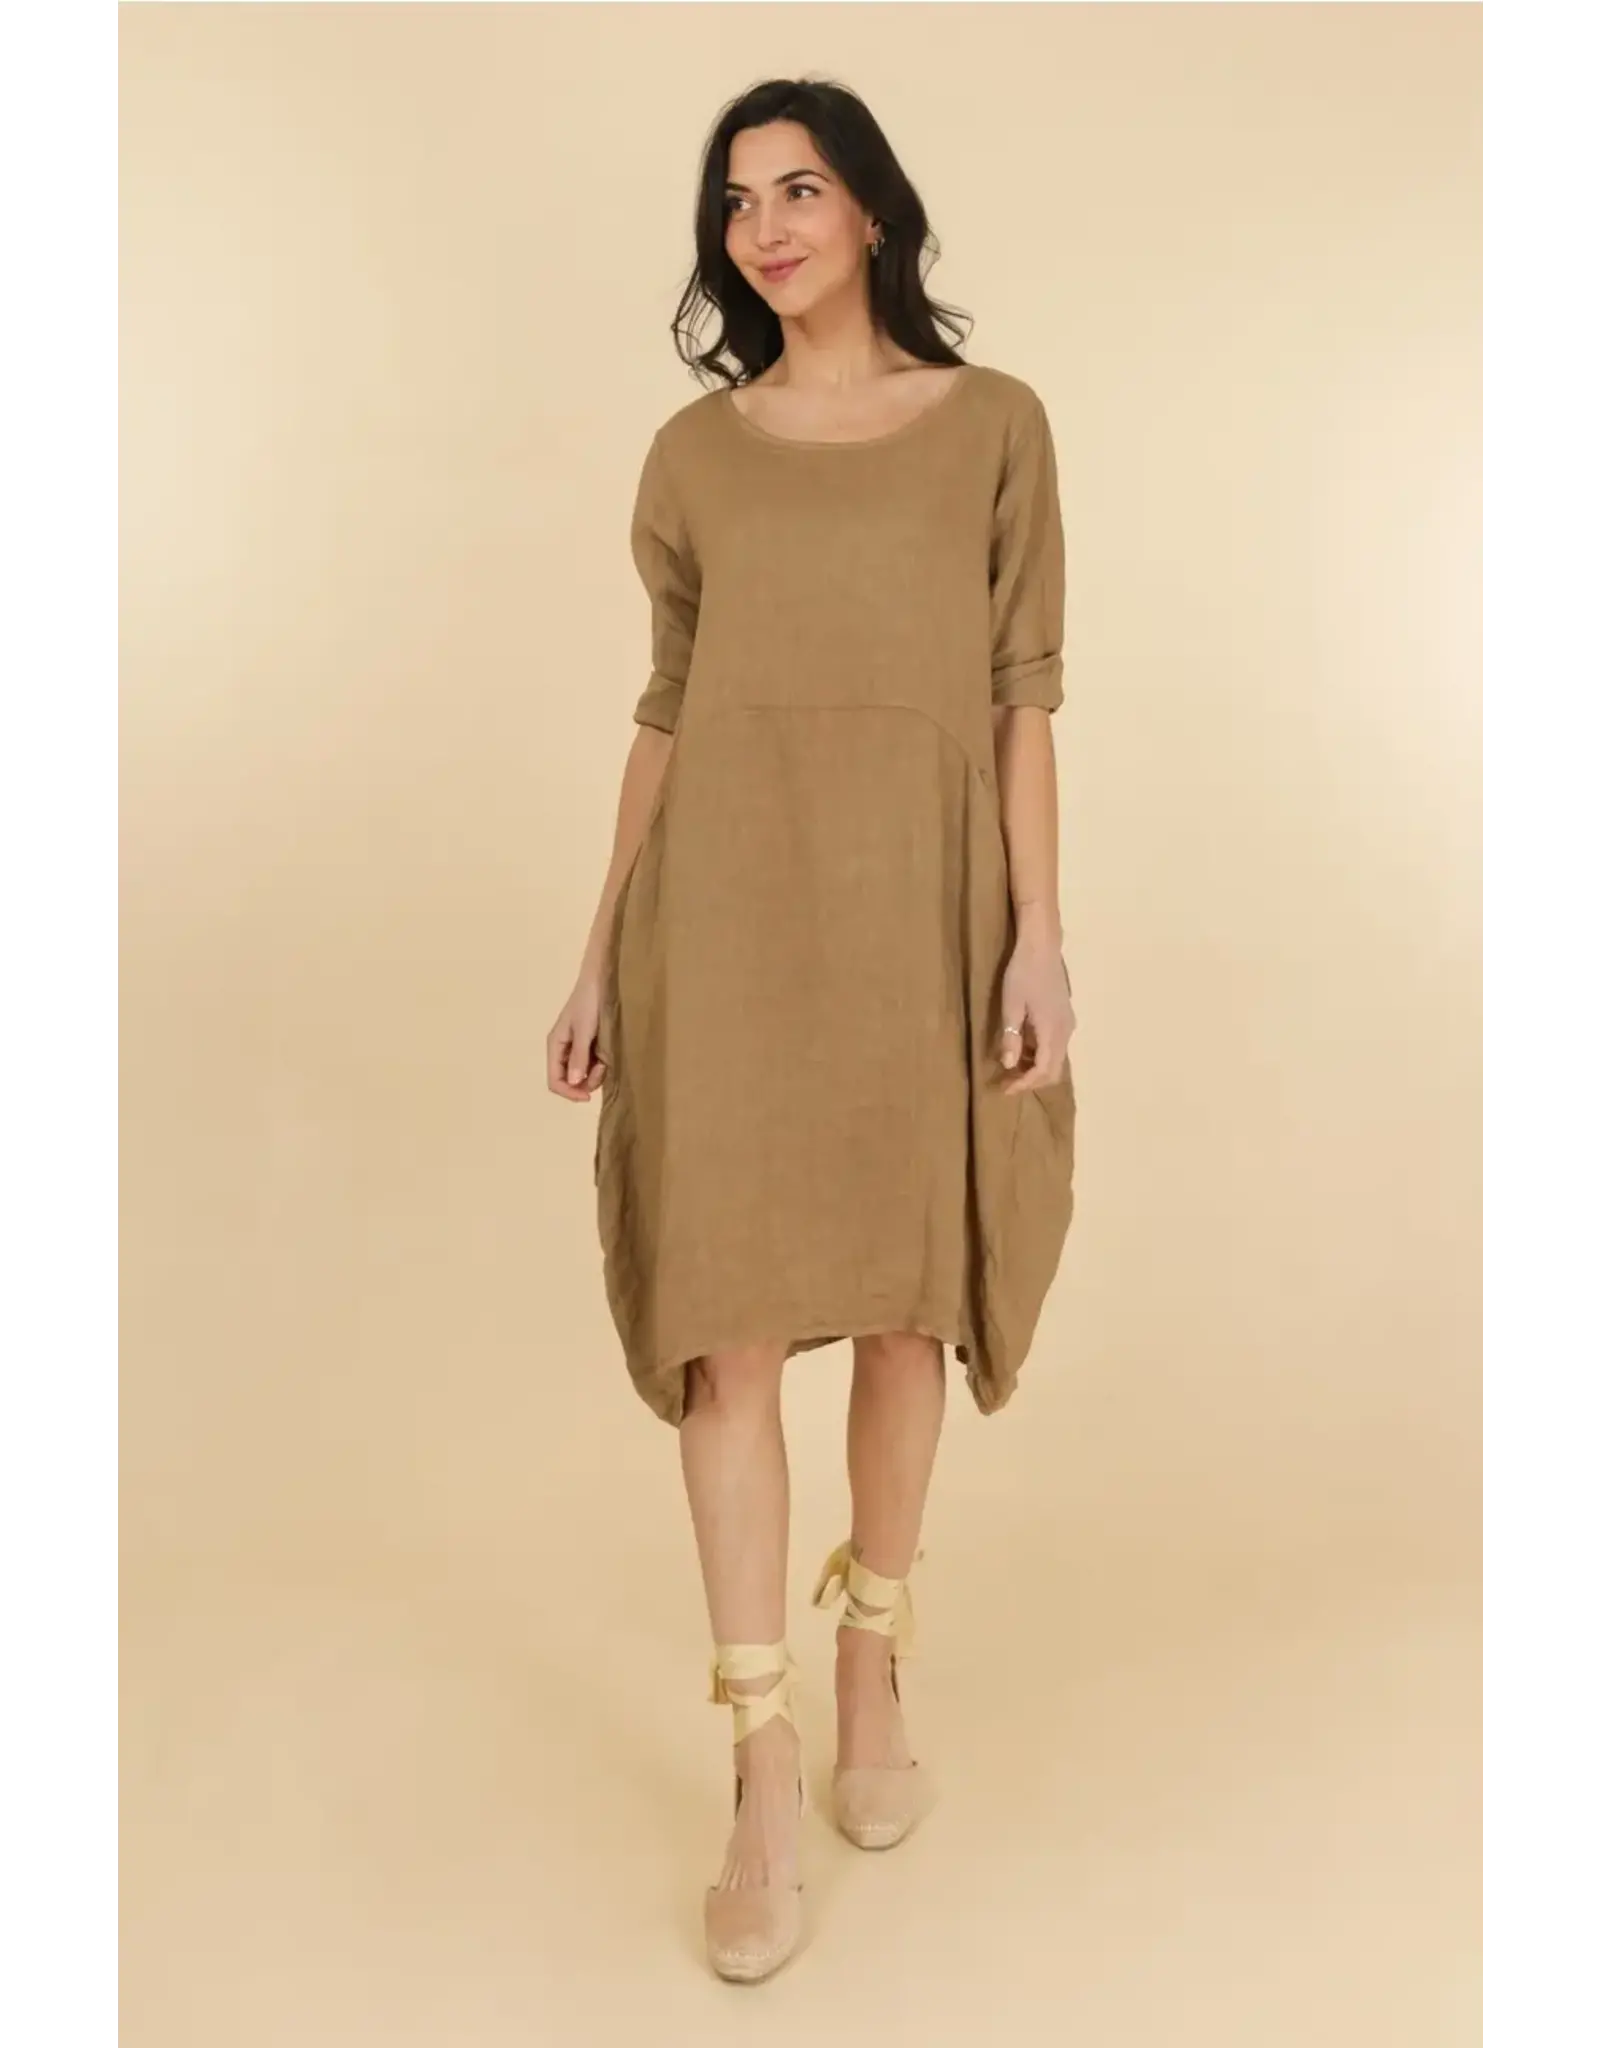 La Maison Linen Dress with Pocket